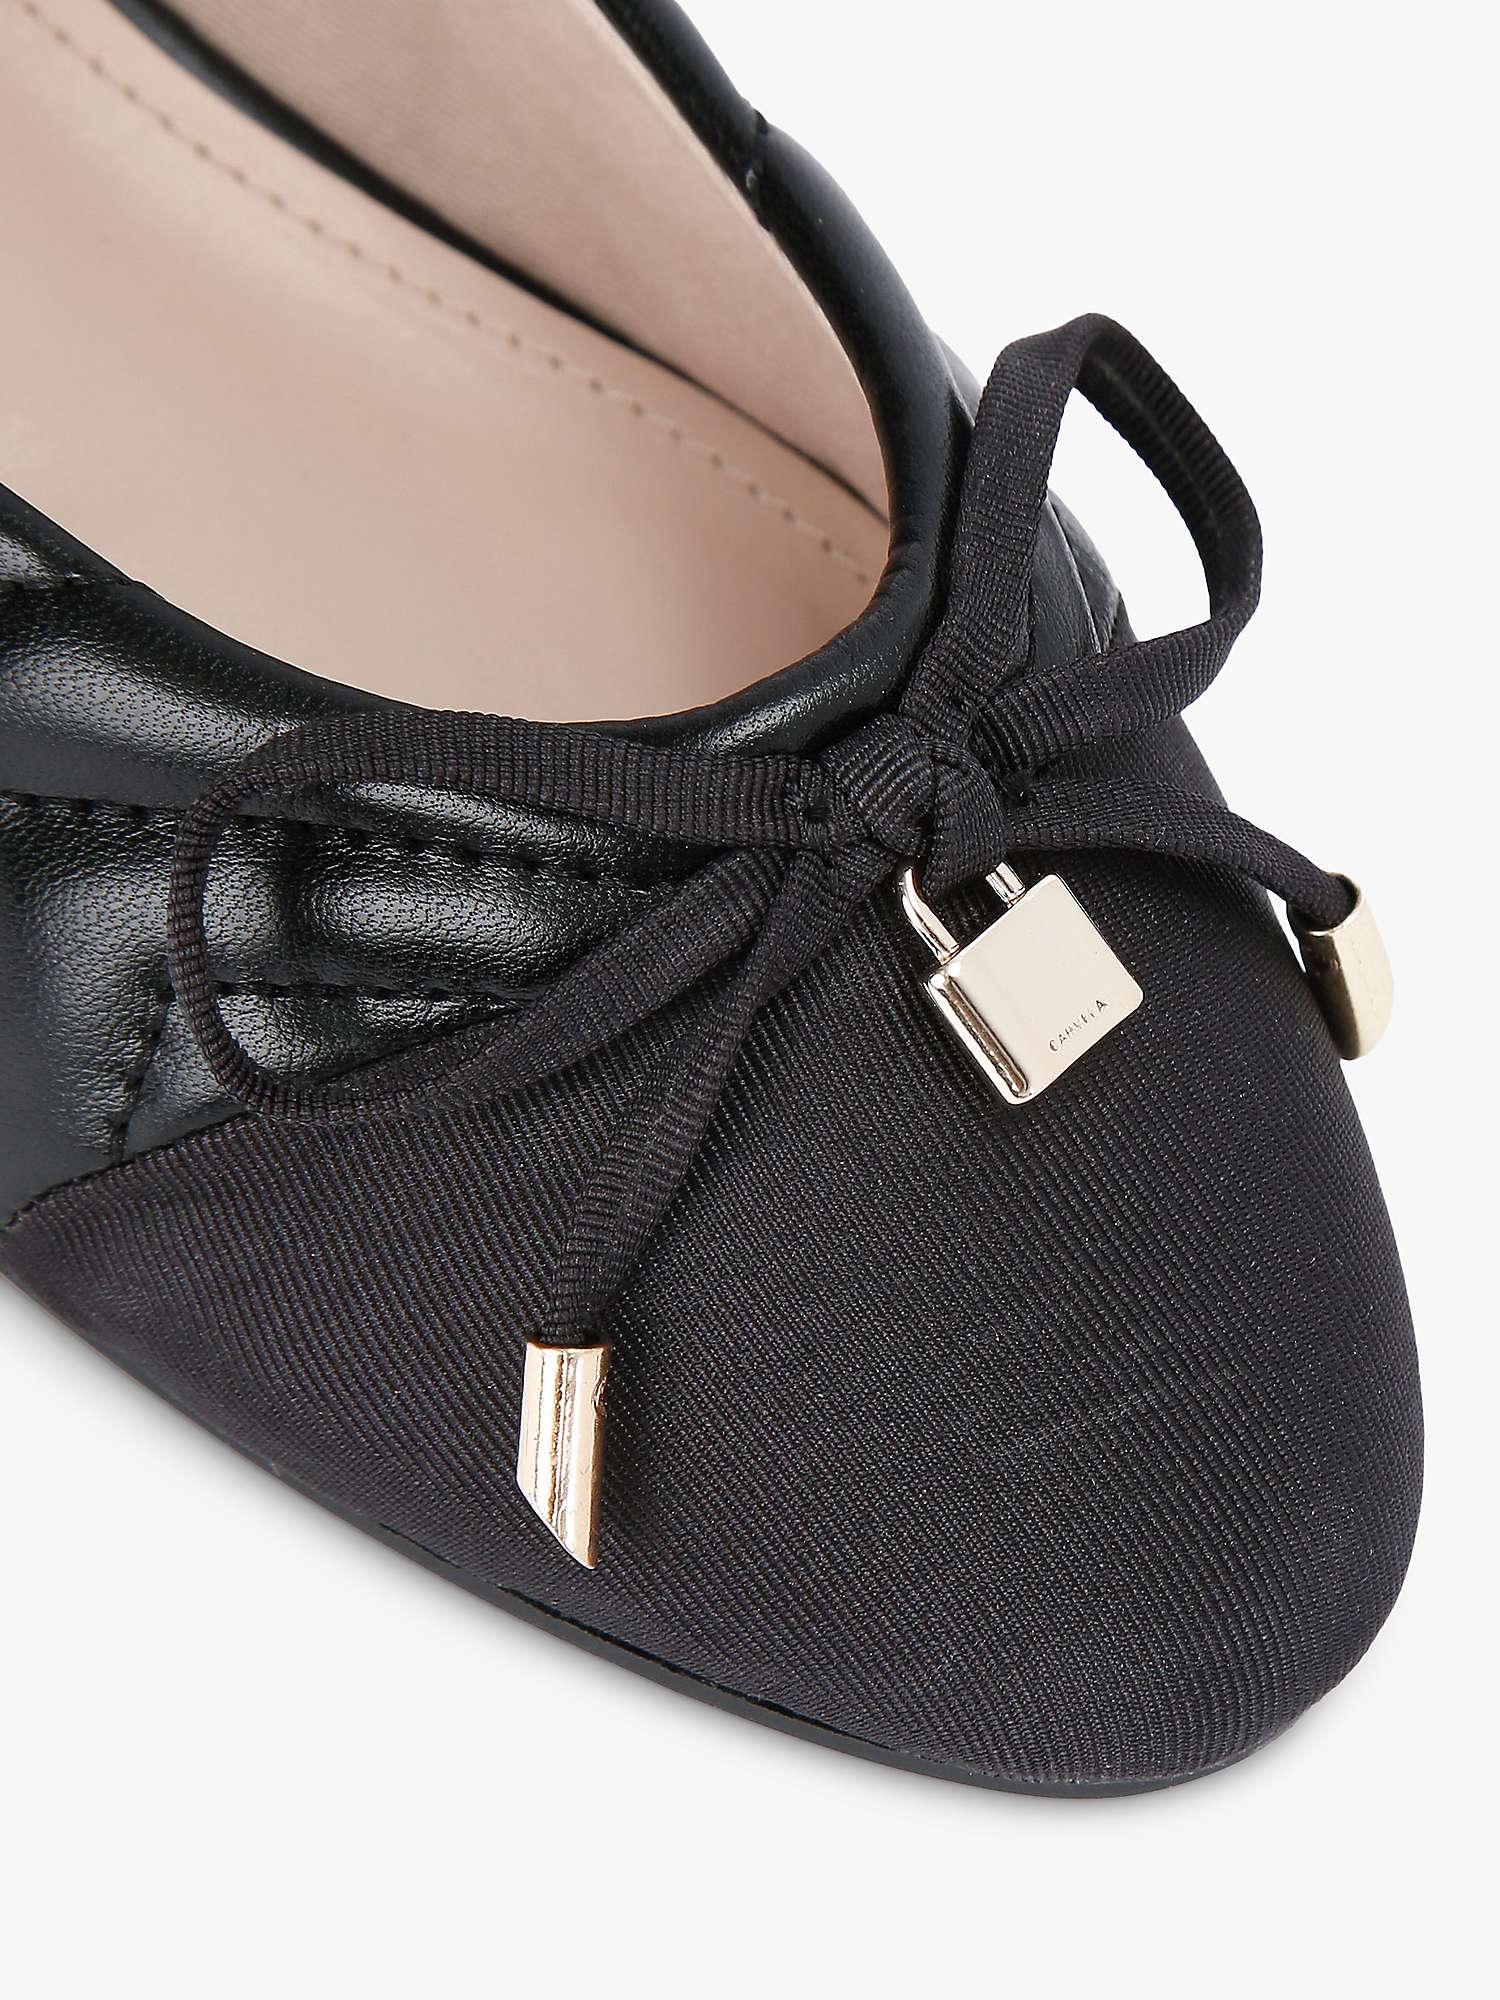 Buy Carvela Lara Ballerina Shoes, Black Online at johnlewis.com